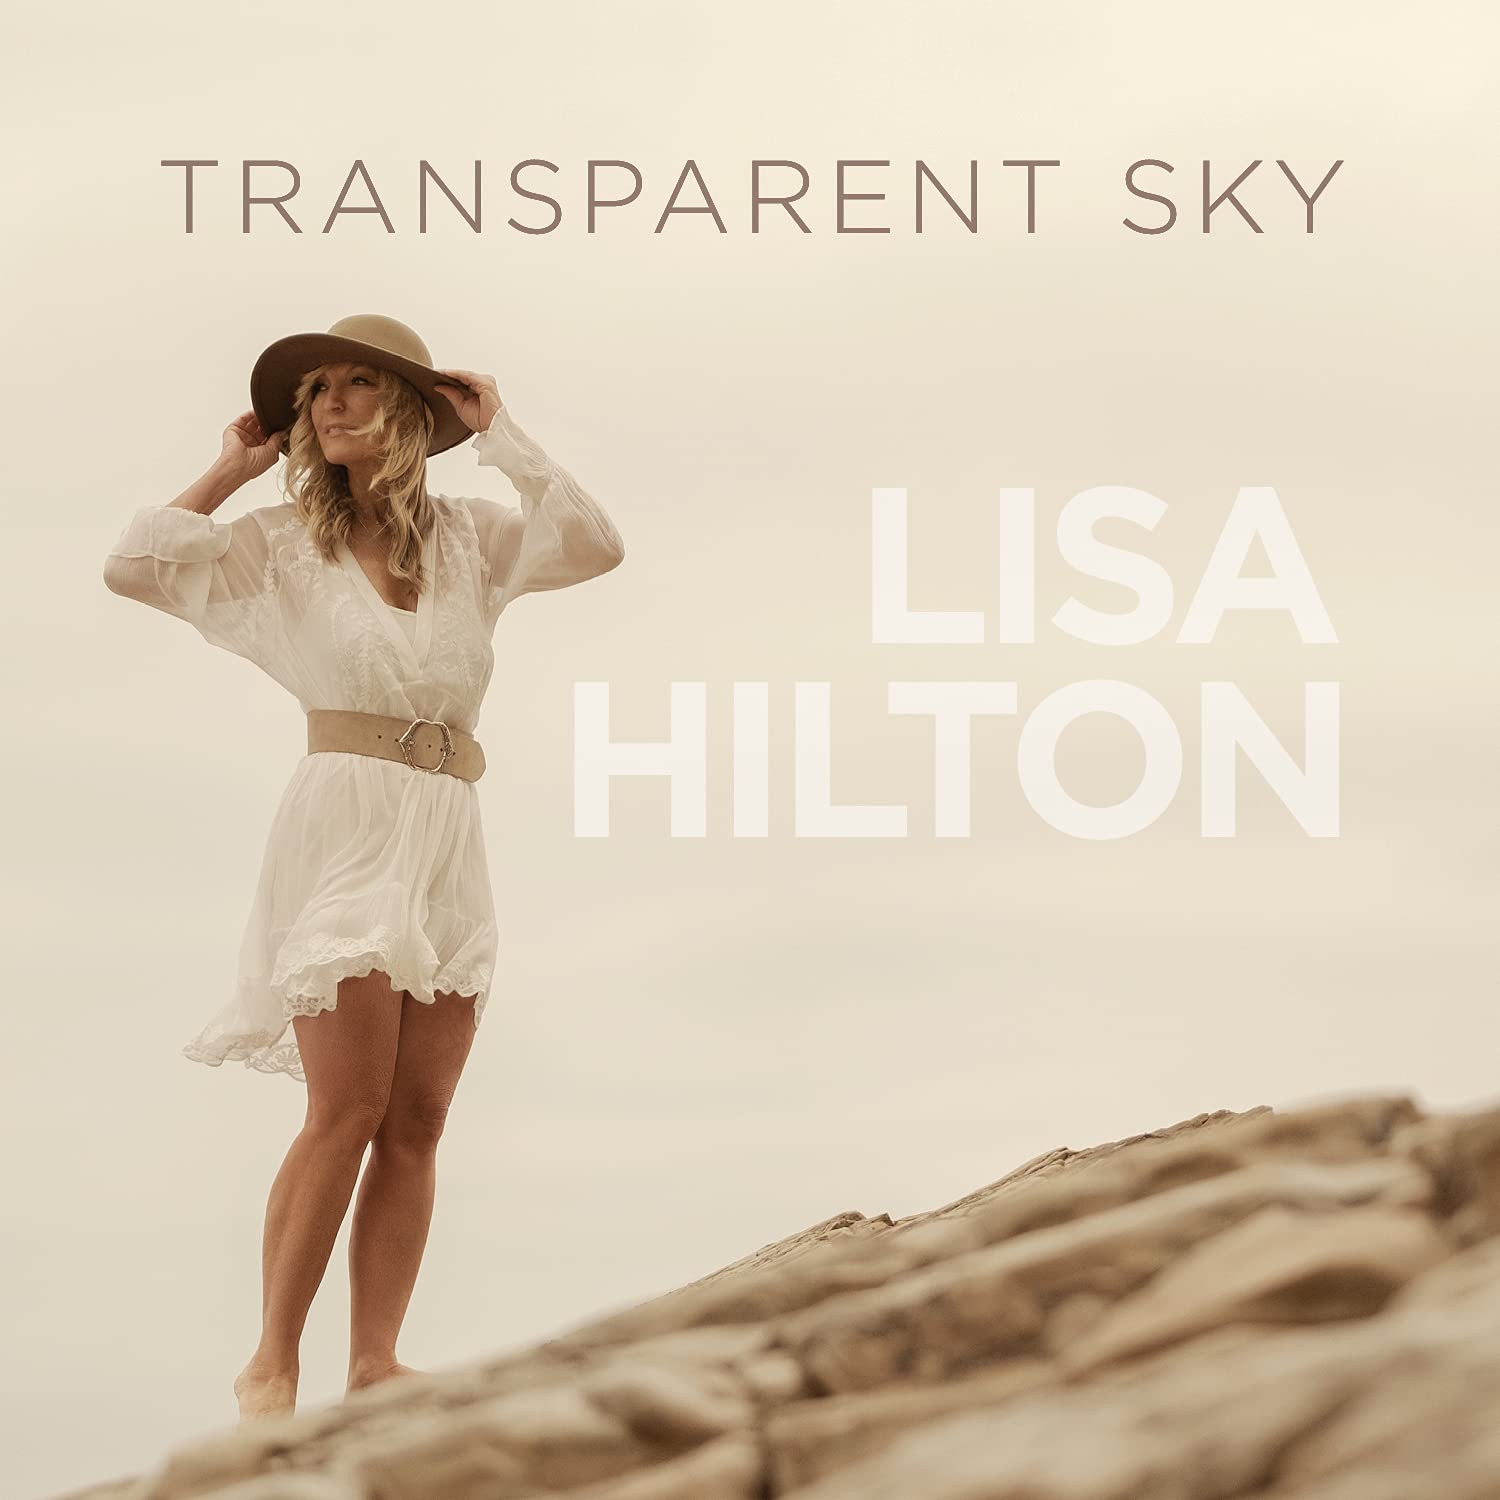 LISA HILTON - Transparent Sky cover 